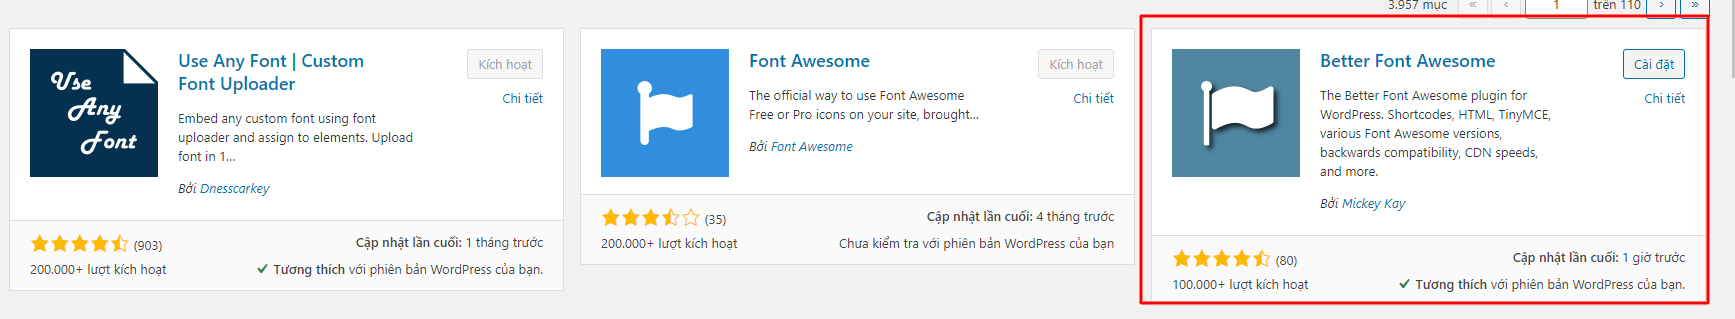 Hướng dẫn thêm Font Awesome vào trang web WordPress - Win Win Media - Thiết Kế... Font awesome CDN html (Font Awesome, WordPress):
Win Win Media giúp bạn dễ dàng thêm Font Awesome vào trang web WordPress của mình. Bạn có thể sử dụng biểu tượng Font Awesome CDN HTML để tạo ra các biểu tượng, logo và hình ảnh độc đáo cho trang web của mình. Hơn nữa, Win Win Media - Thiết Kế... đã giới thiệu cách sử dụng các biểu tượng Font Awesome CDN HTML đẹp mắt và dễ sử dụng để giúp trang web của bạn trở nên chuyên nghiệp và thu hút người dùng.